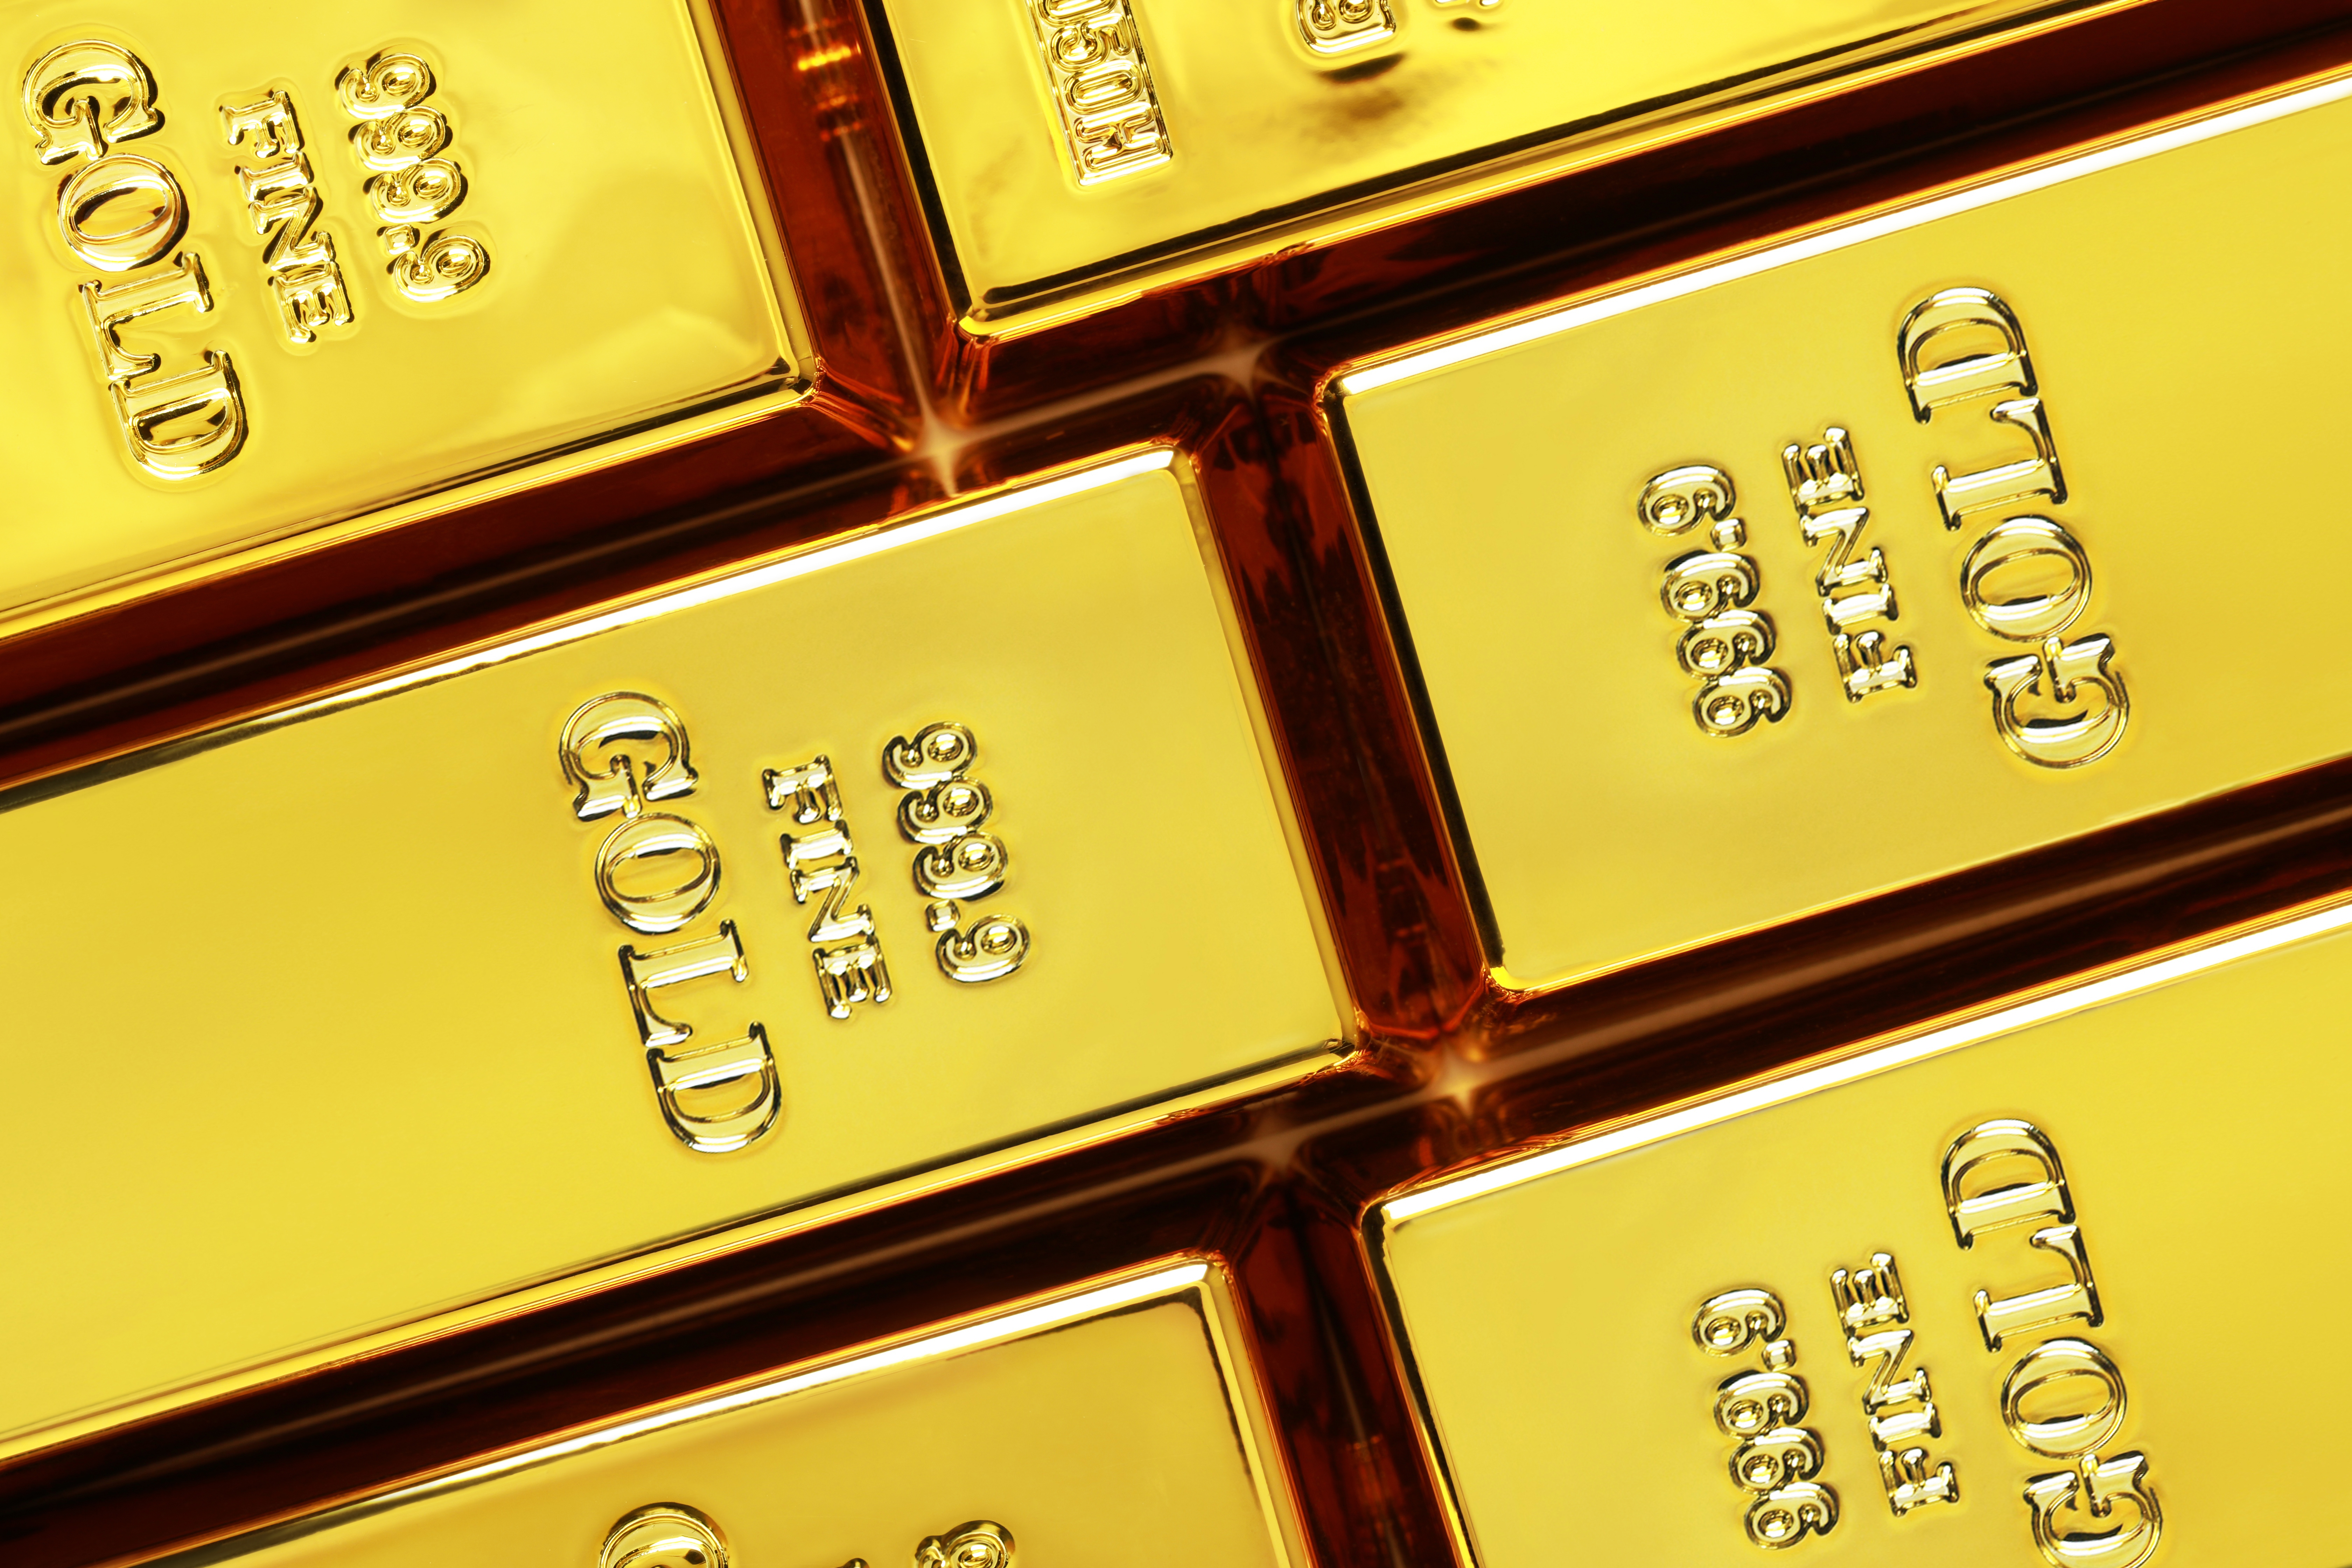 Cena złota w fazie wyczekiwania. Dzisiejsze dane mogą wiele zmienić